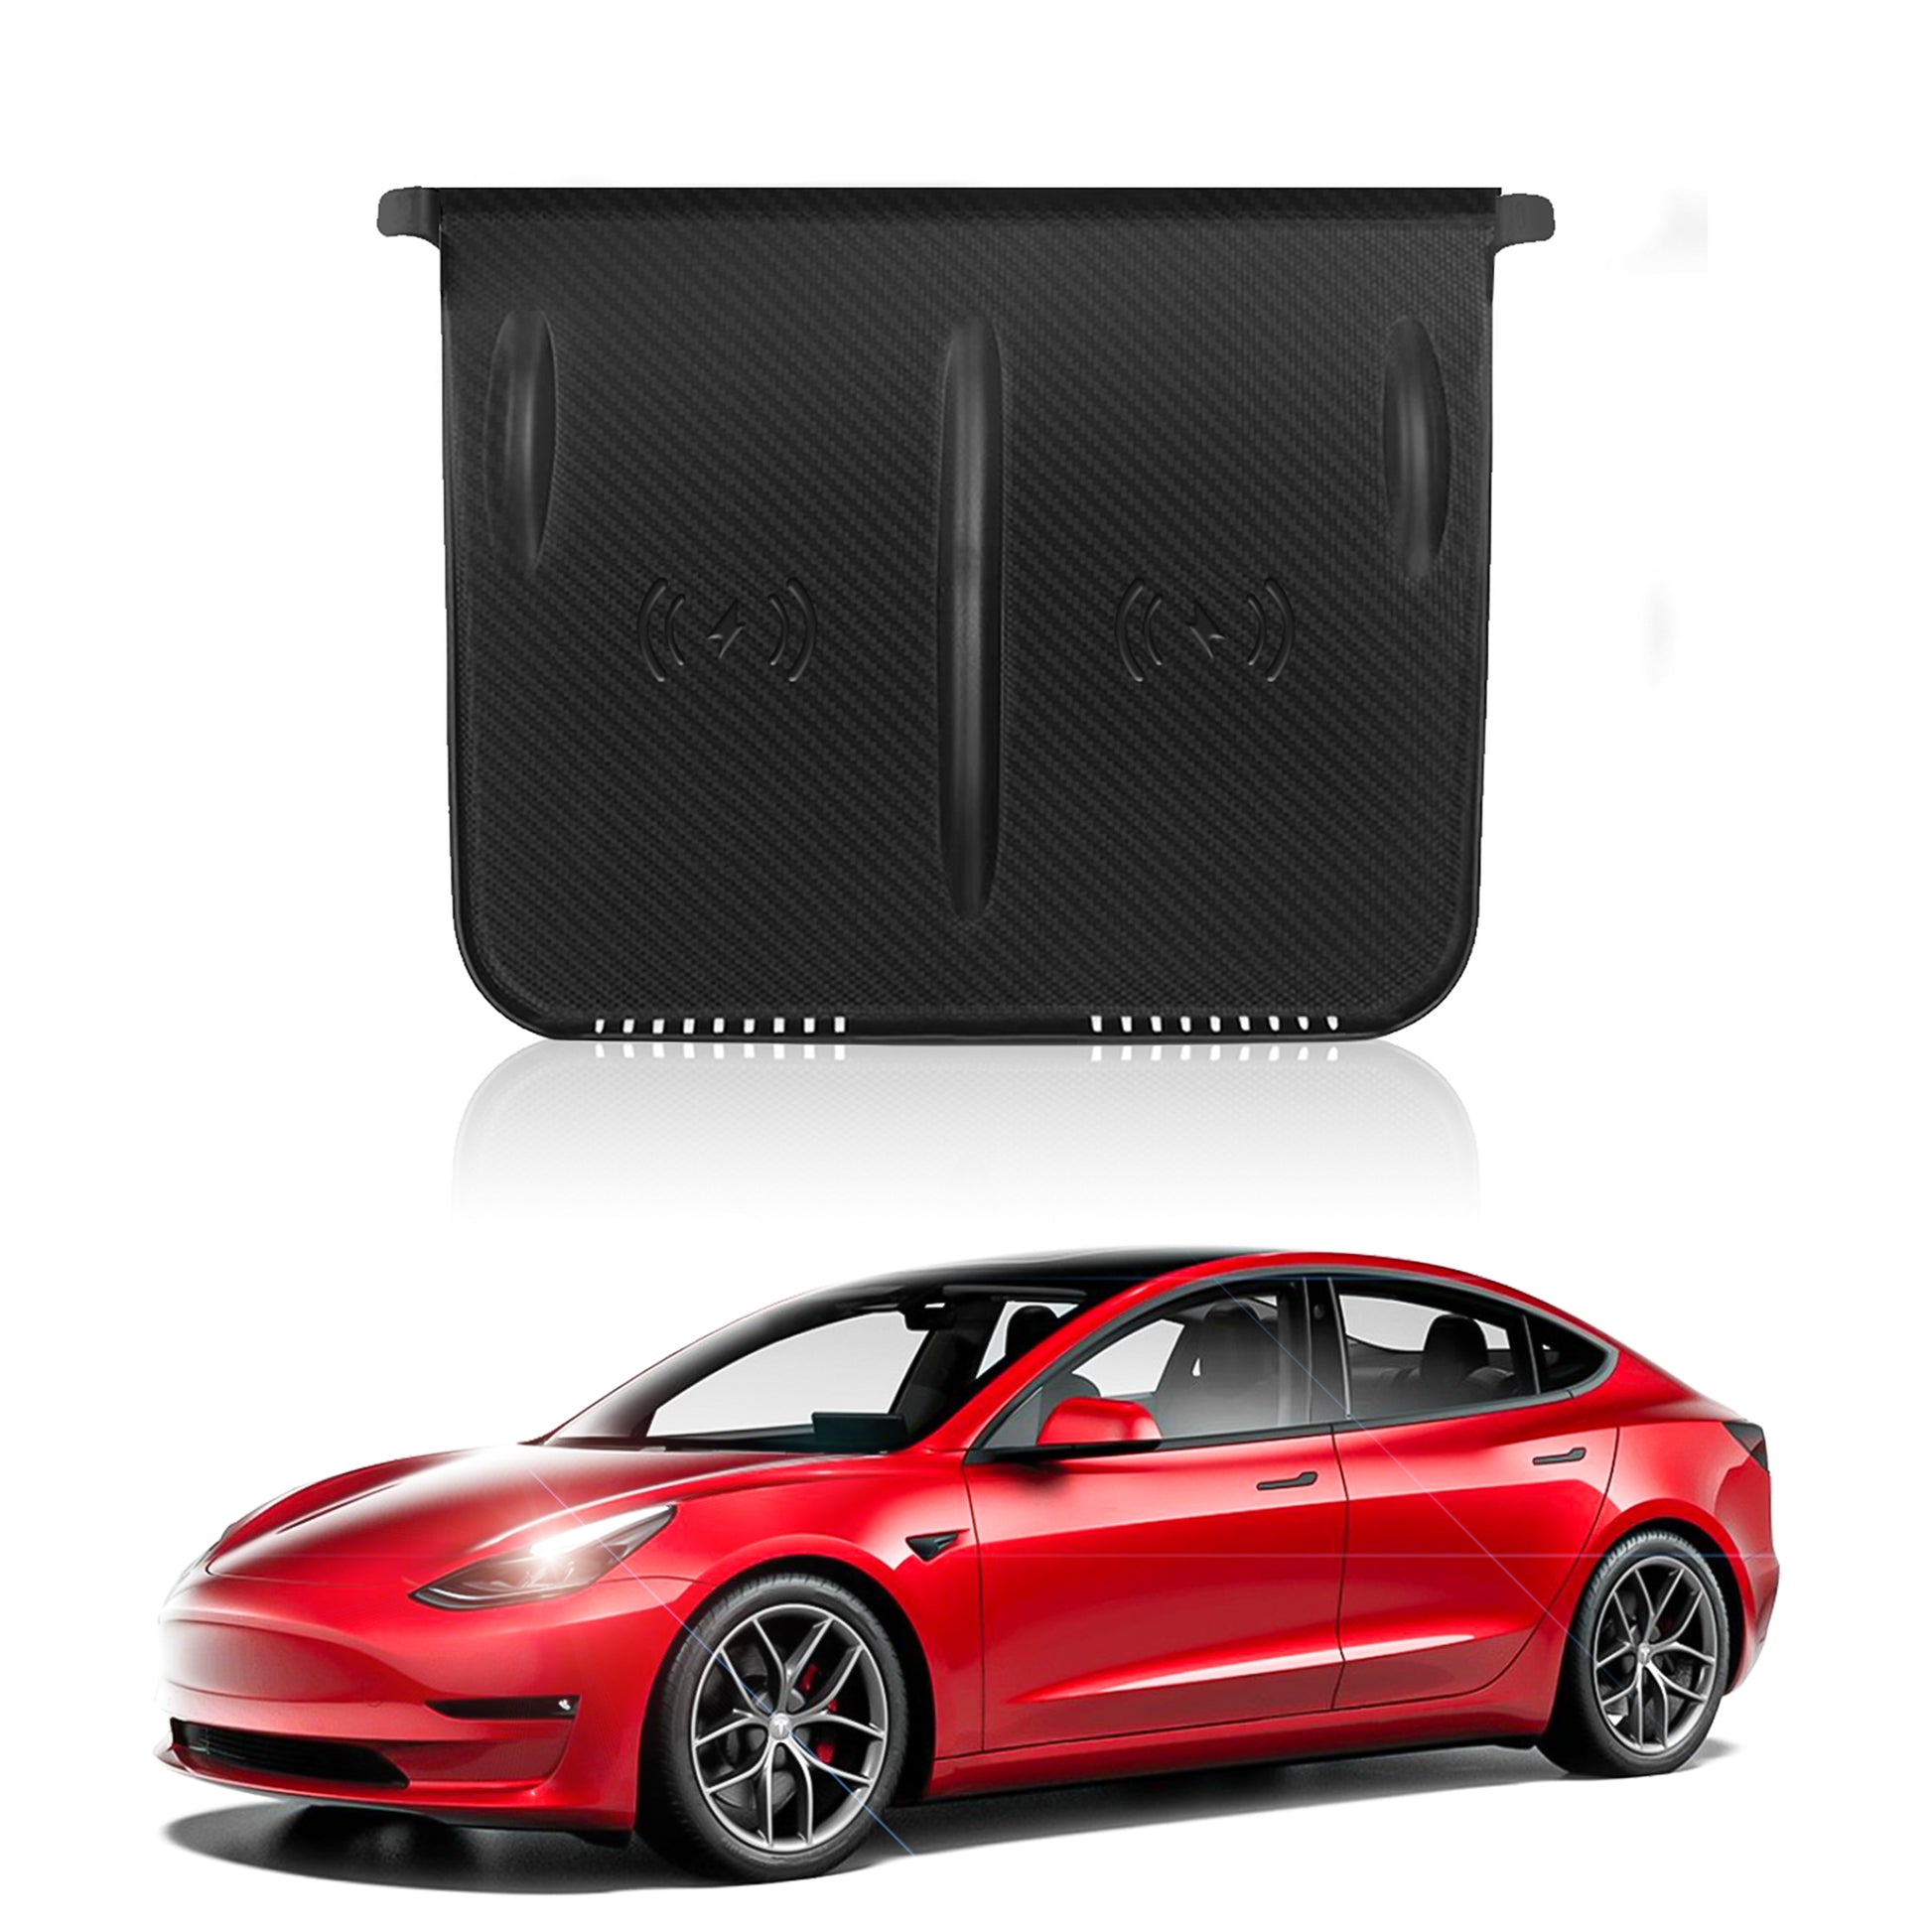 Tapis de chargeur sans fil pour Tesla Model Y et console centrale 3 en  fibre de carbone – Arcoche